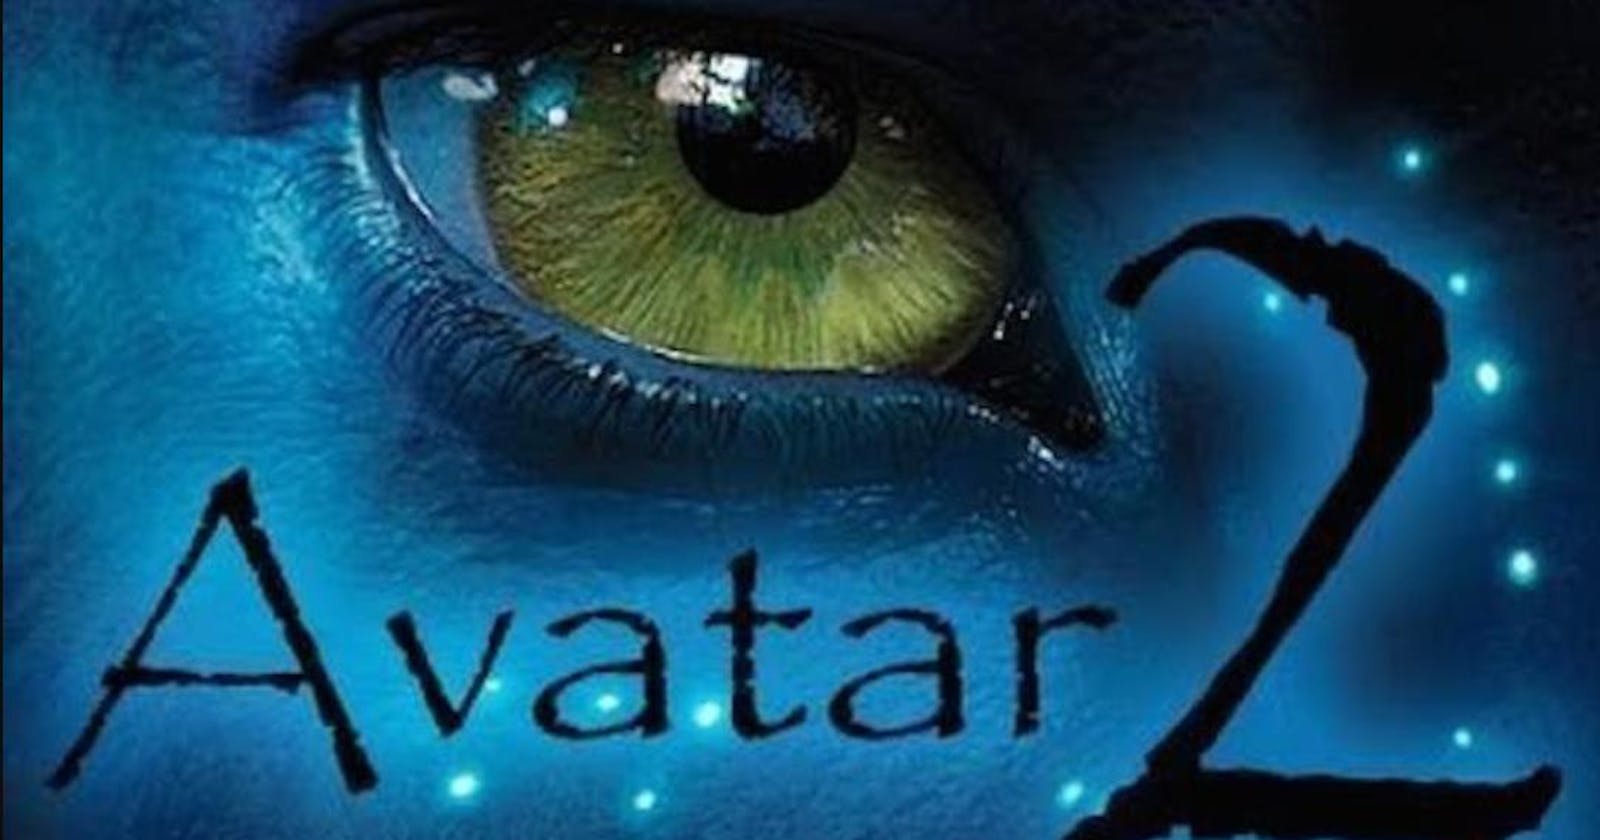 Guarda Avatar 2 (Film 2022) Streaming Sub ita in altadefinizione